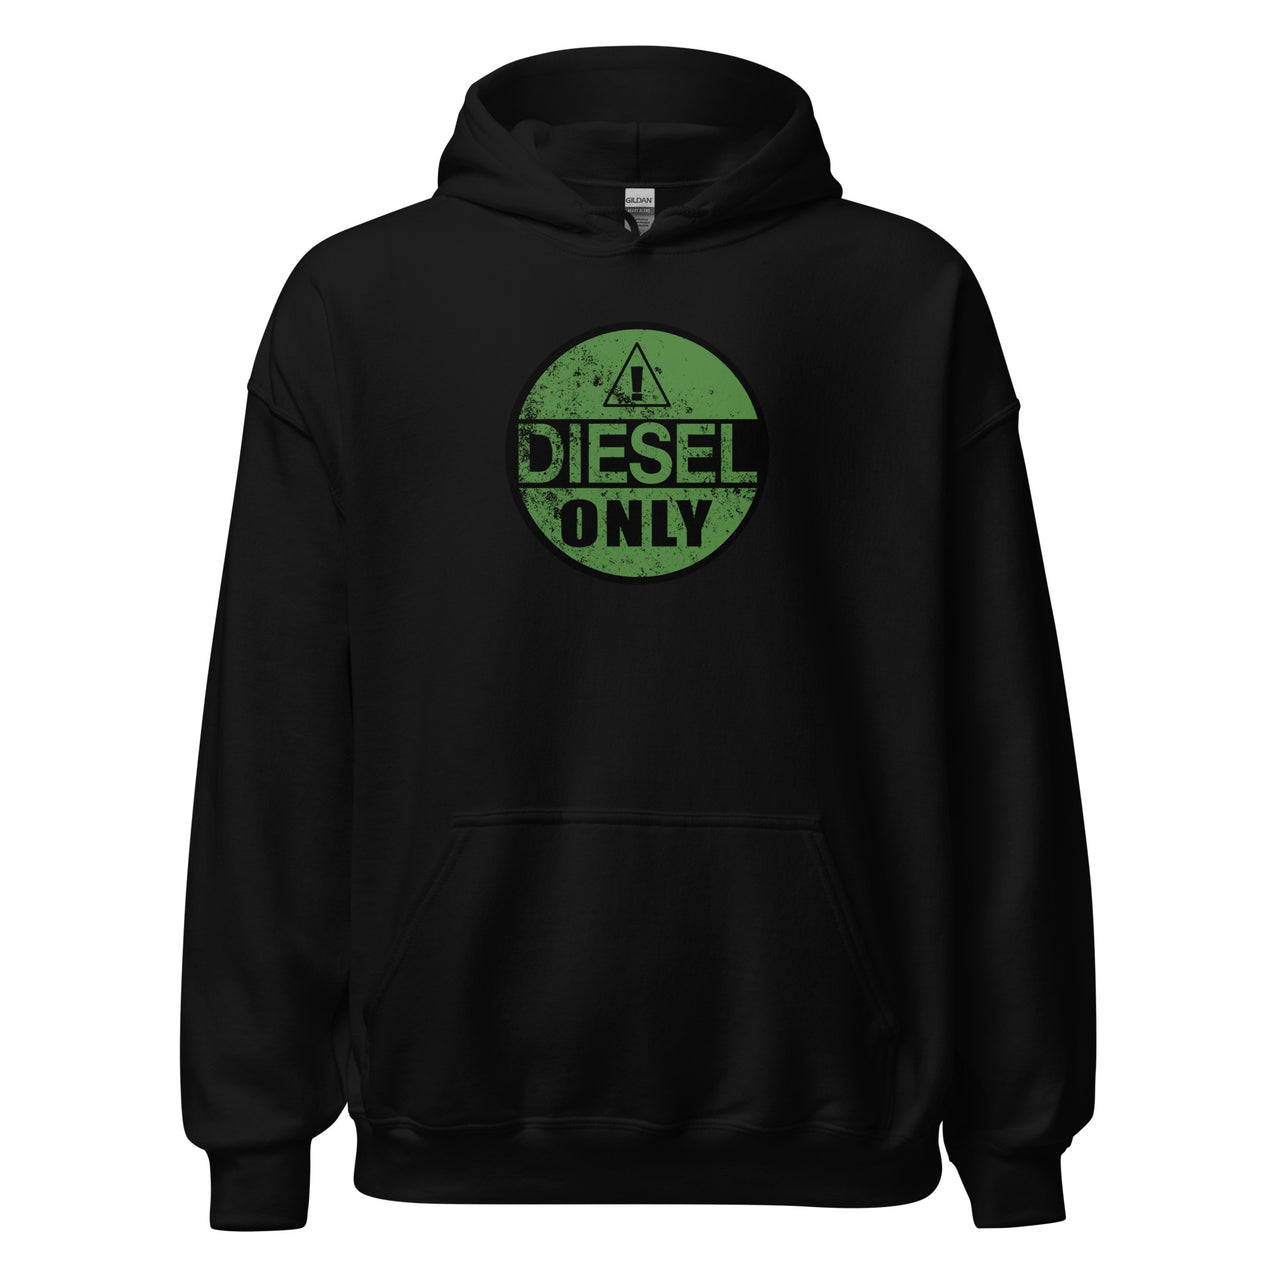 Diesel Only Hoodie in black